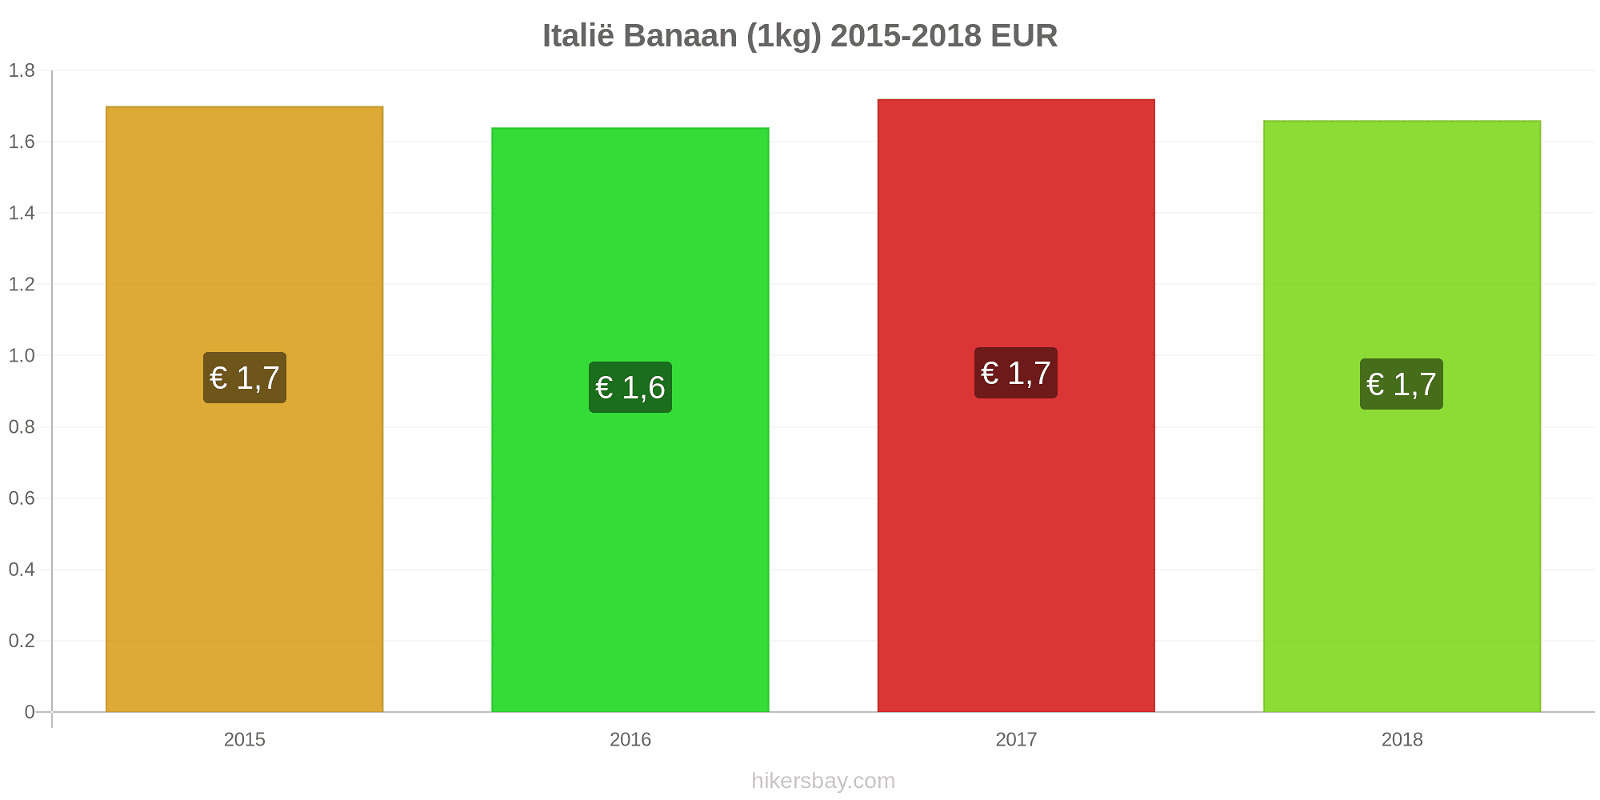 Italië prijswijzigingen Bananen (1kg) hikersbay.com